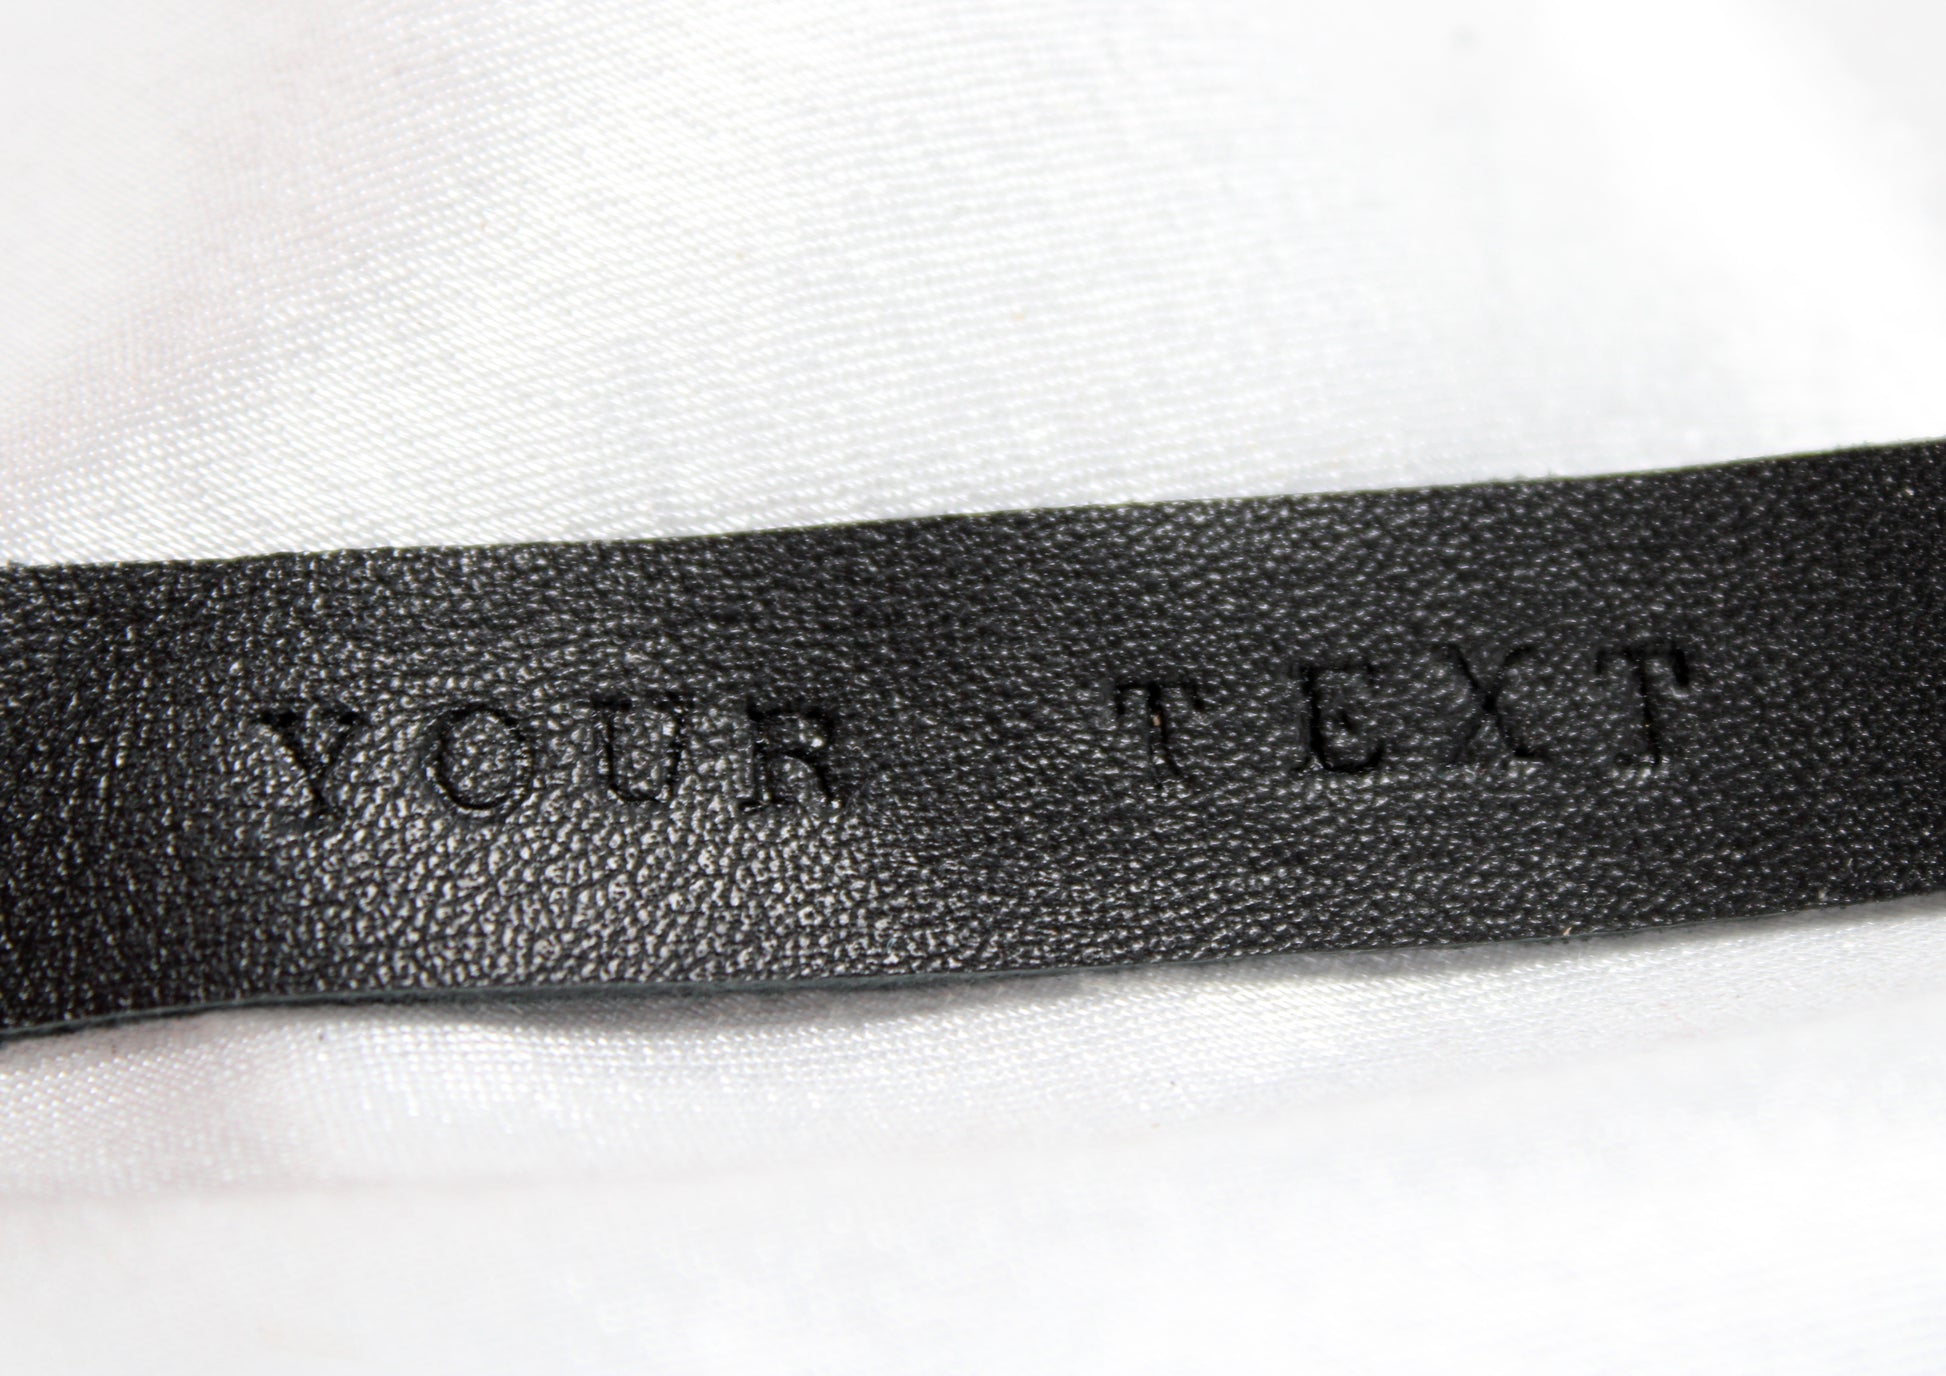 Inscription de personnalisation sur la dragonne en cuir, est écrit "YOUR TEXT" avec des lettres martelées, en impression dans le cuir.